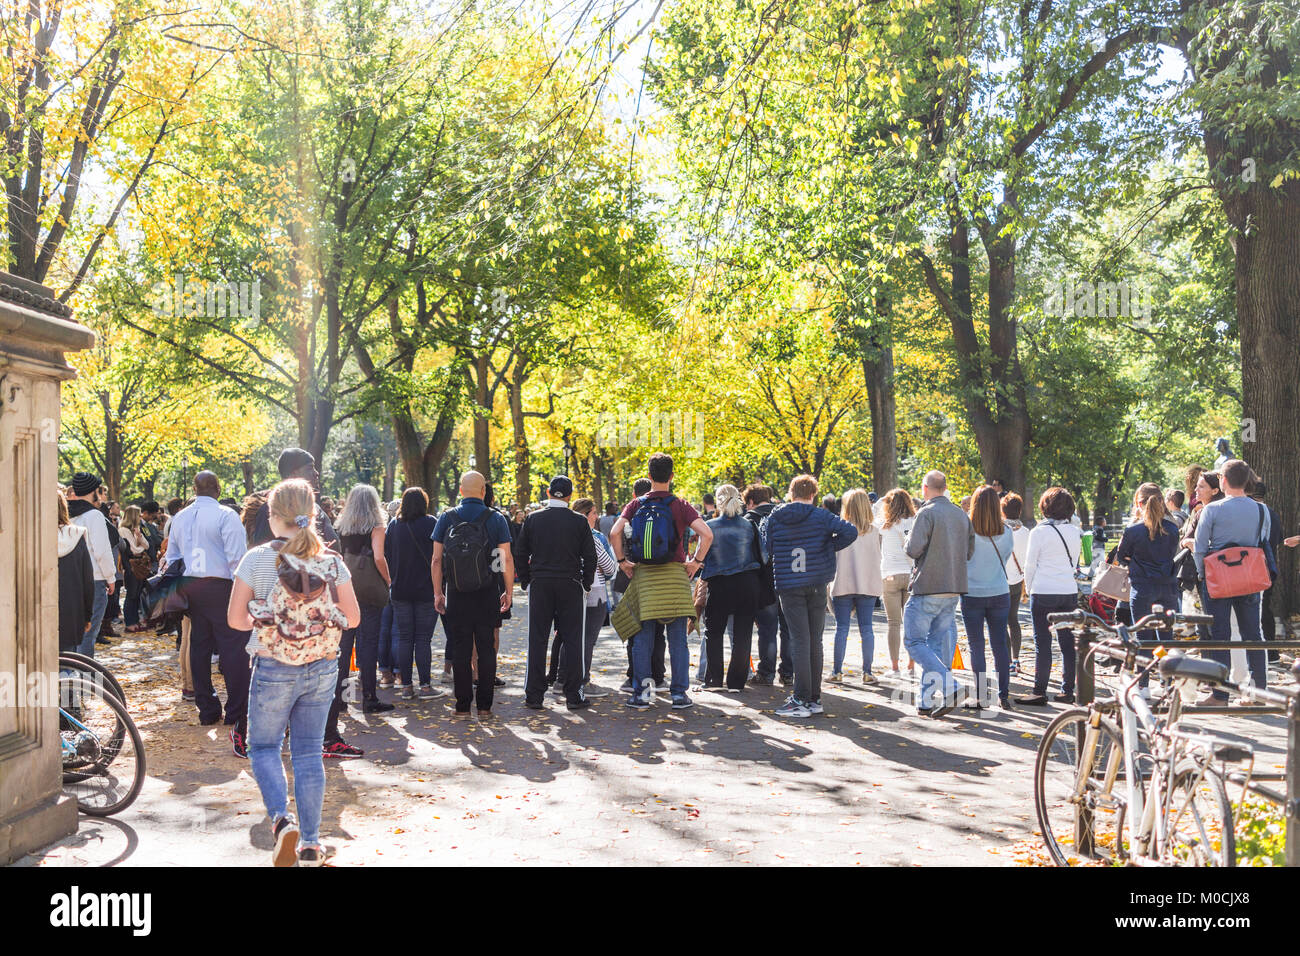 La città di New York, Stati Uniti d'America - 28 Ottobre 2017: Manhattan NYC Central park, la folla di persone in piedi a guardare street performance sulla giornata di sole, passeggiate Foto Stock